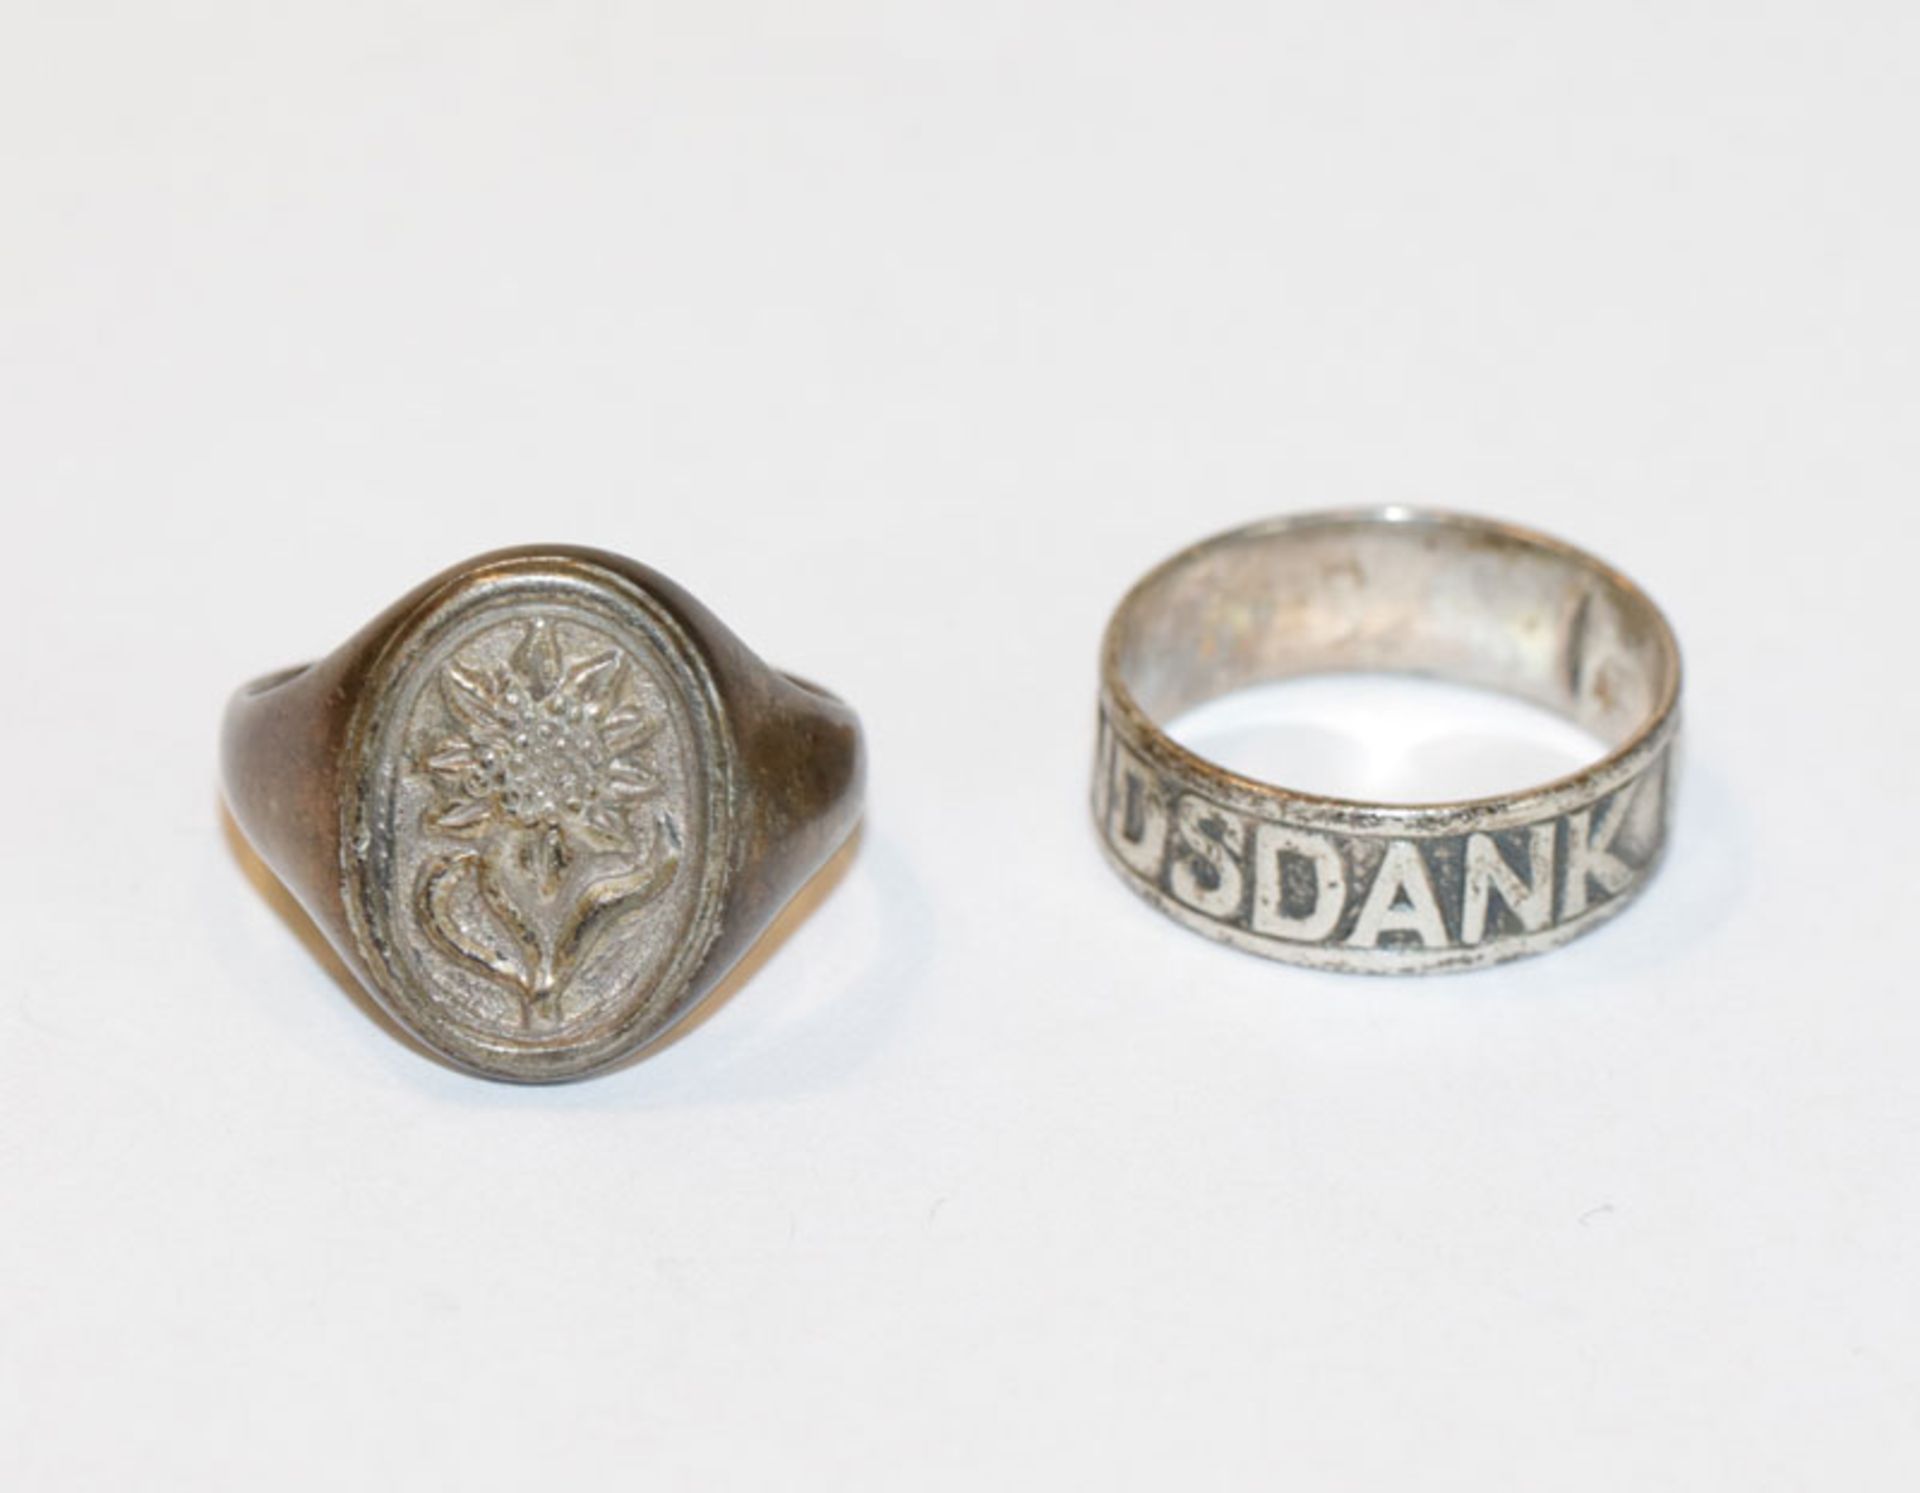 Silber Ring, graviert 'Vaterlandsdank 1914', Gr. 54, und Silber Ring mit Wappendekor der Gebirgs